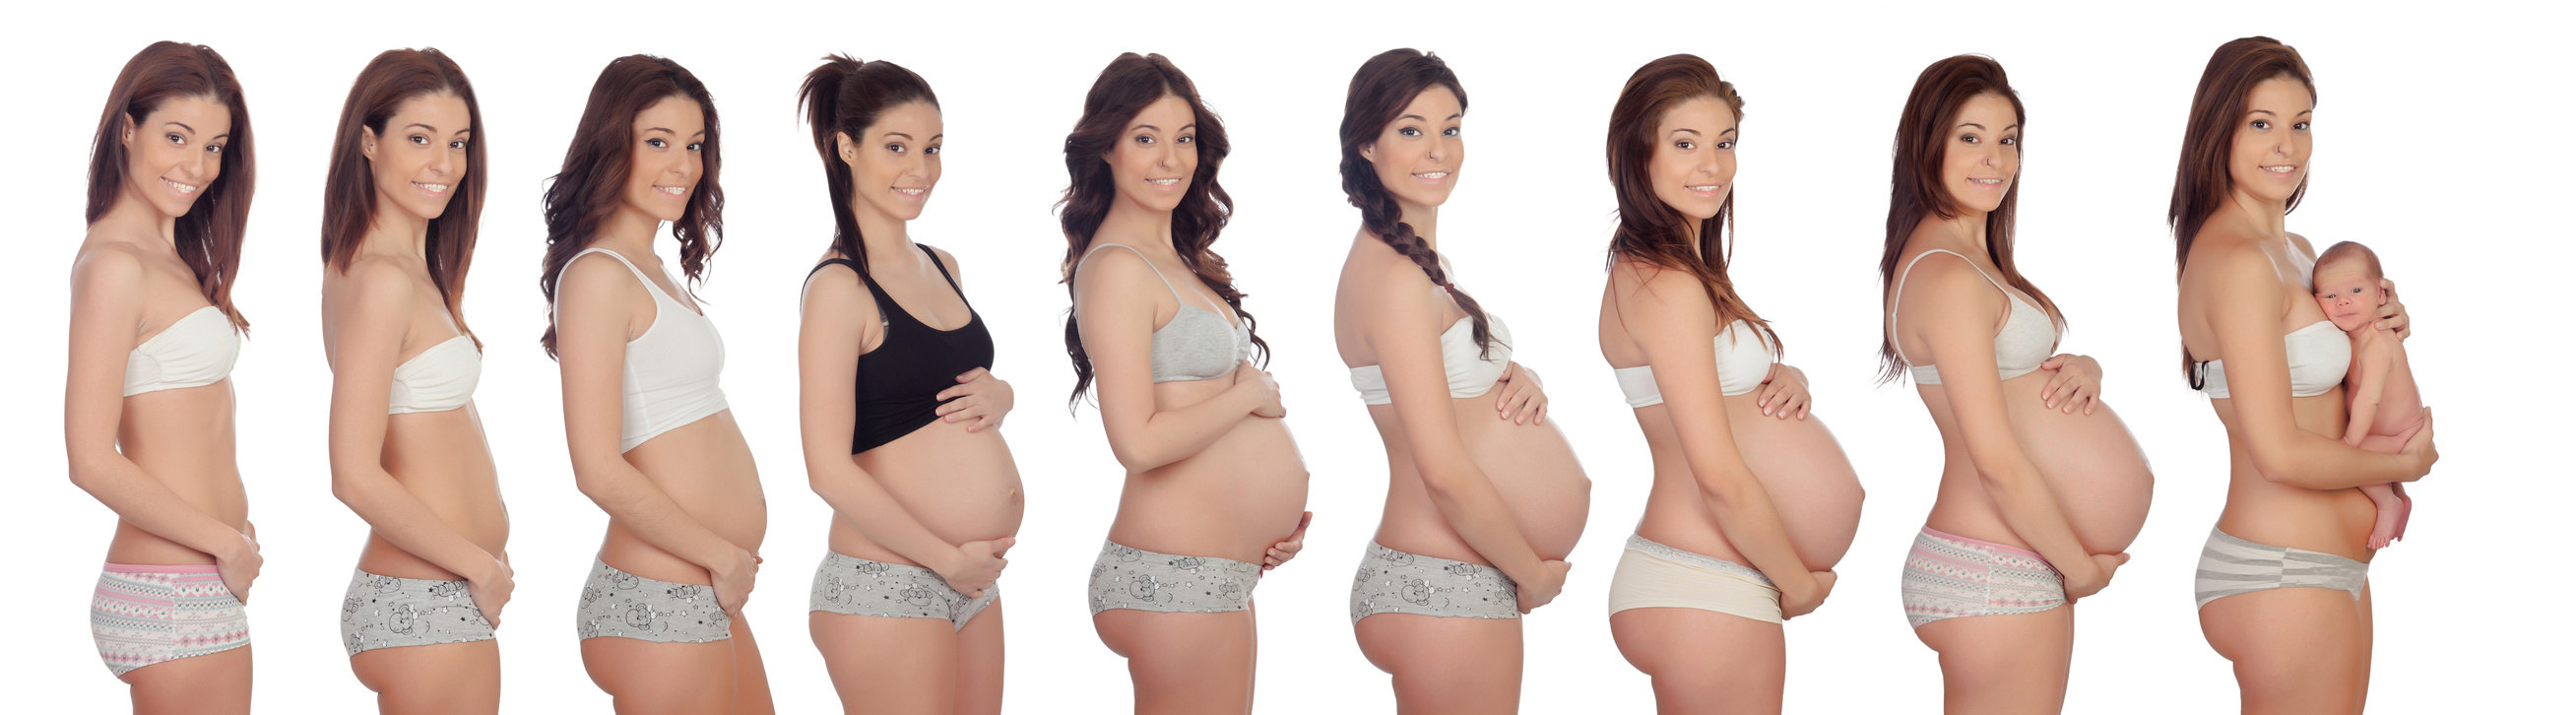 беременность 4 недели грудь не увеличивается фото 29